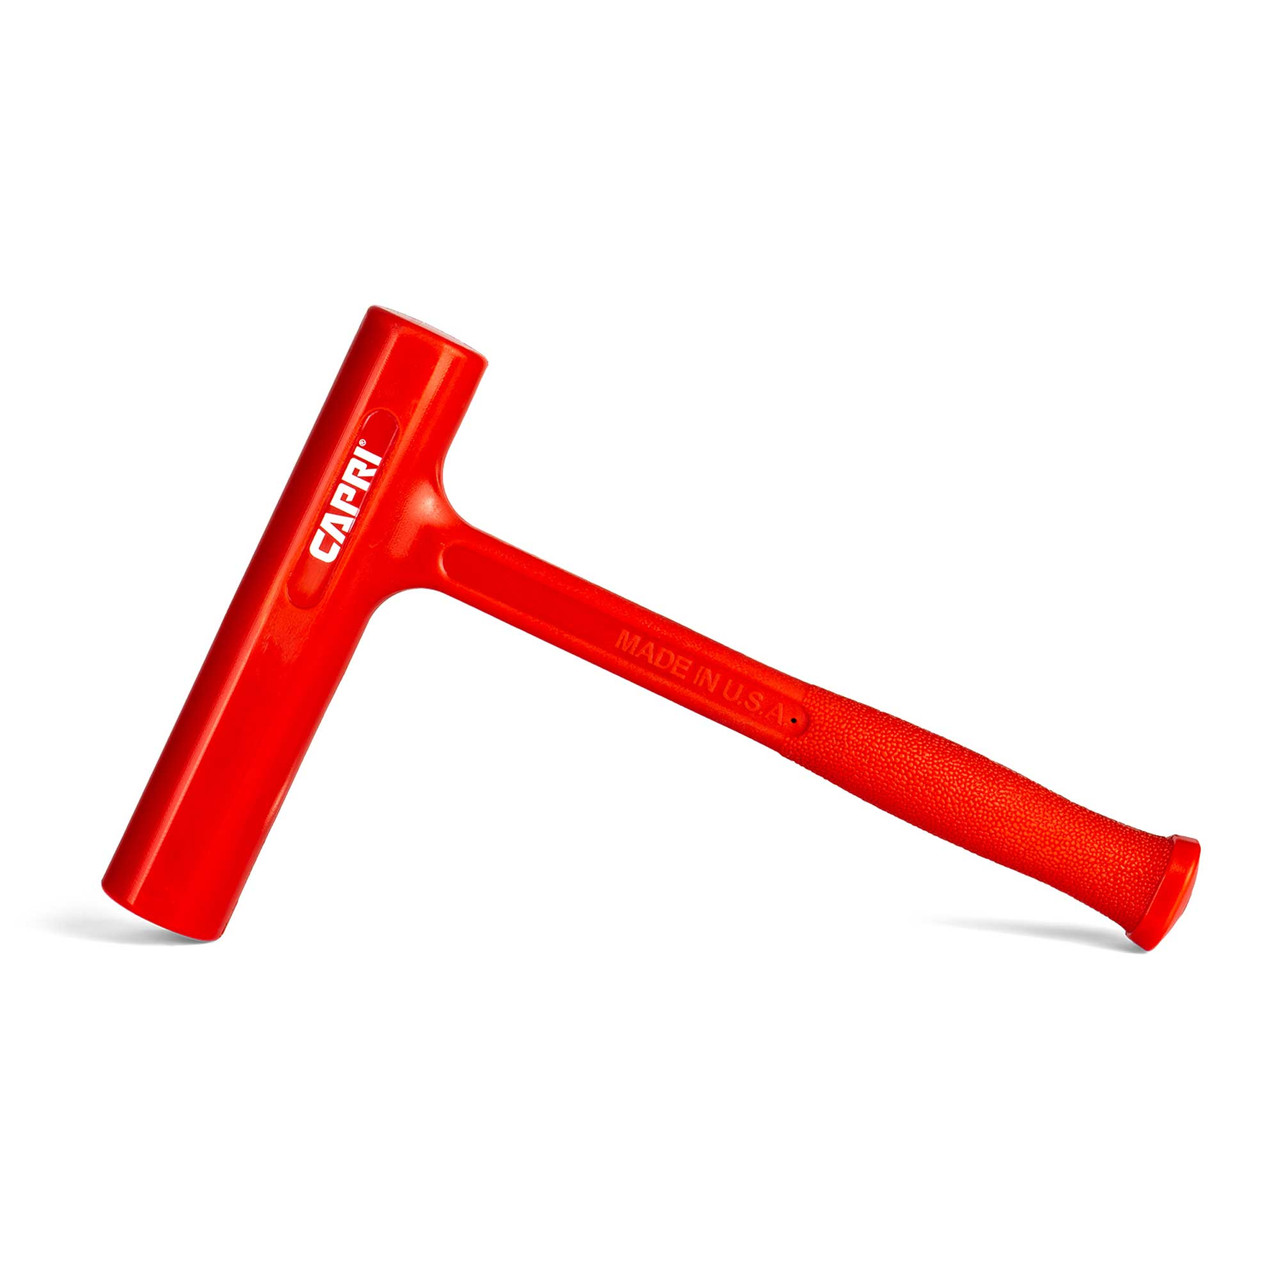 Capri Tools 32 oz. Slim Dead Blow Hammer